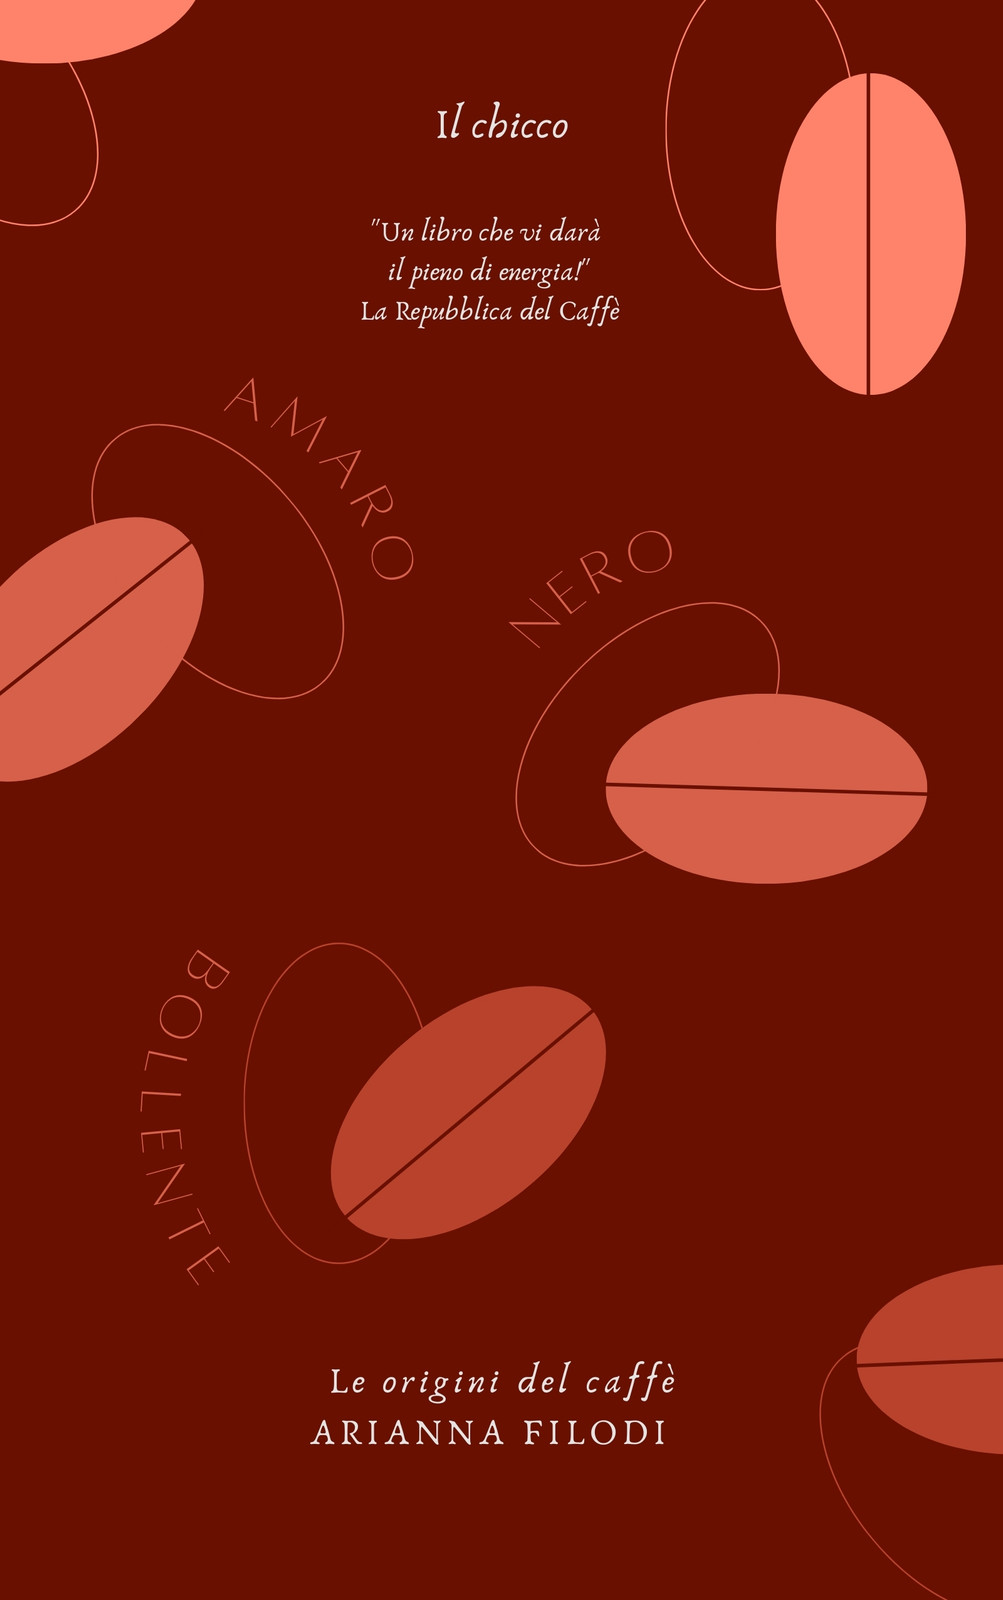 Modello di copertina del libro di ricette del libro di cucina Canva  modificabile per copertine di appunti per notebook, modello Canva per  copertina